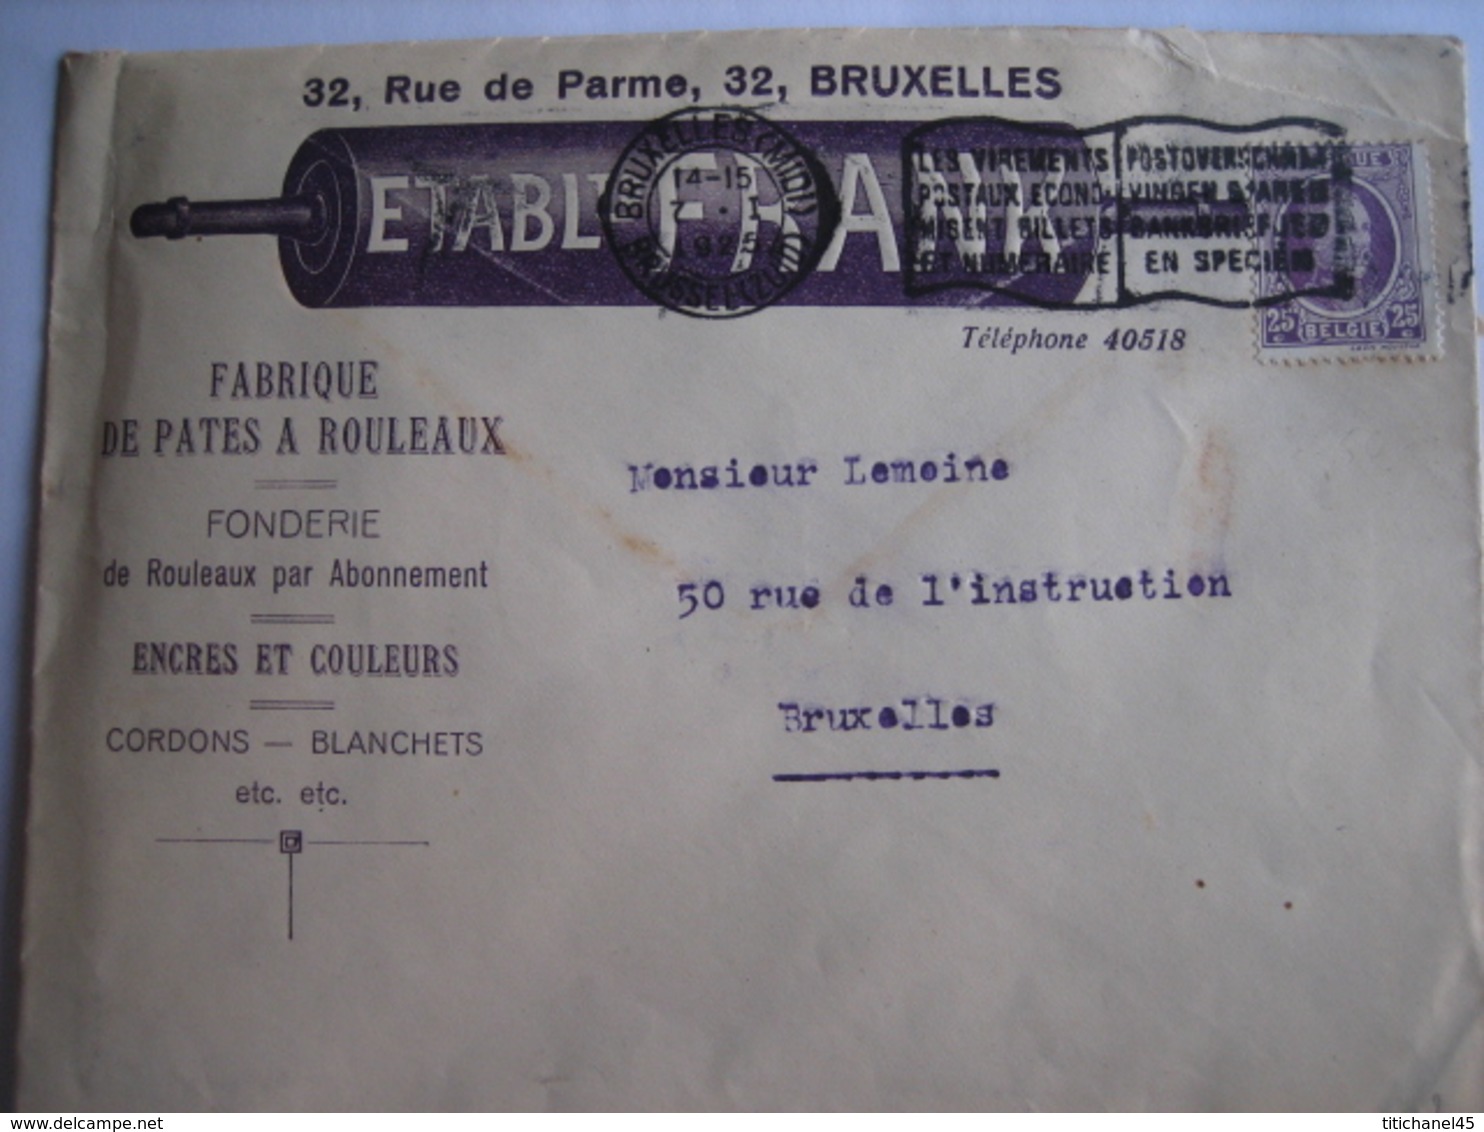 BRUXELLES 1925 - Enveloppe Publicitaire - Etablt. FRANK - Fabrique De Pates à Rouleaux, Fonderie, Encres & Couleurs - Imprimerie & Papeterie